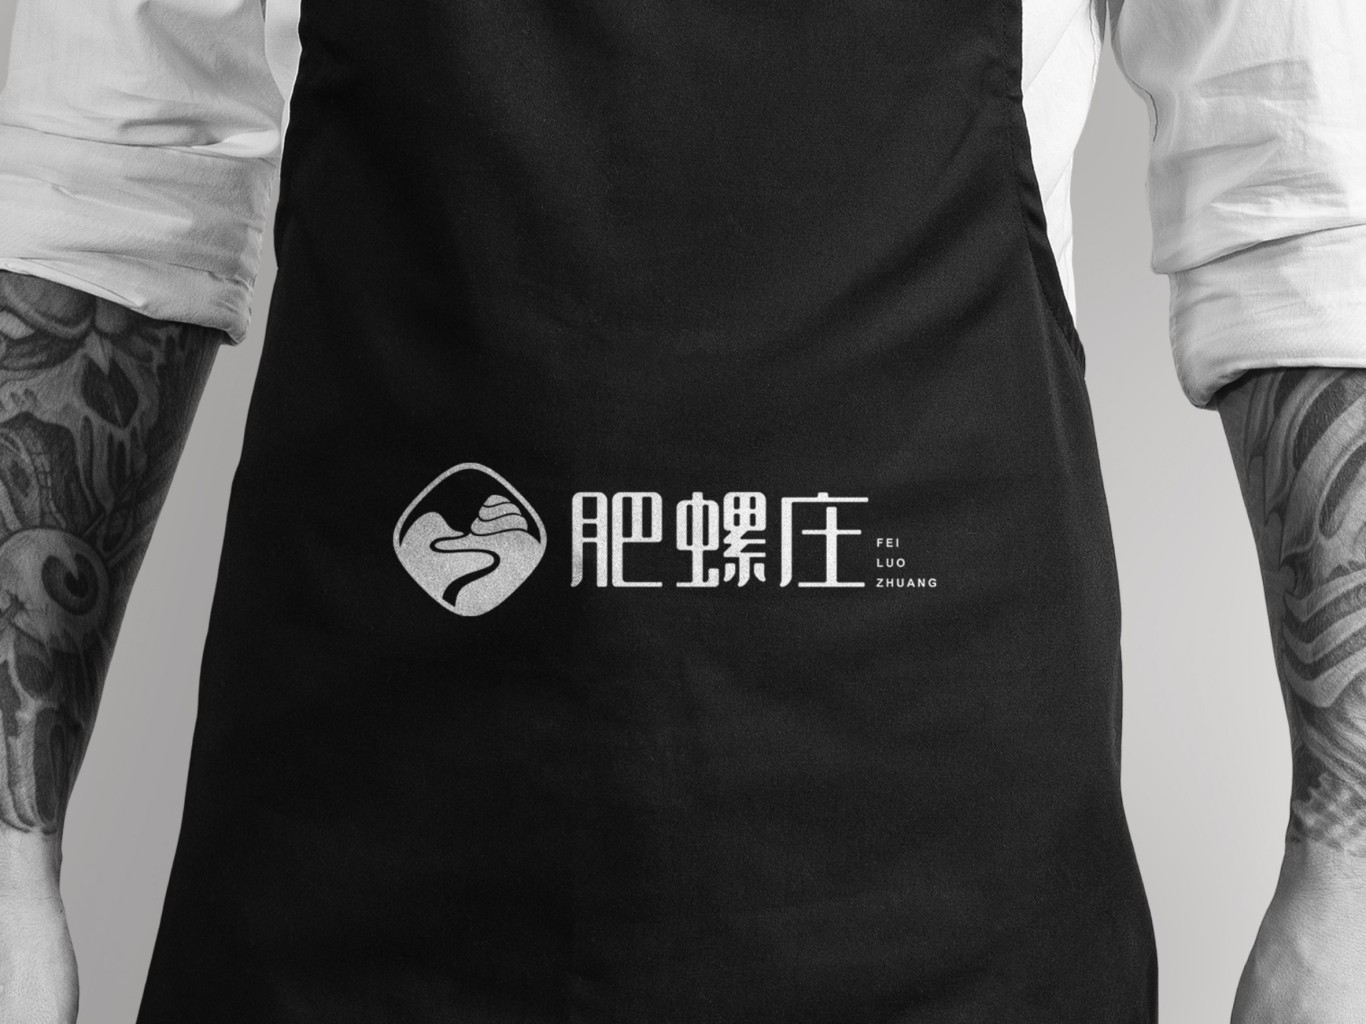 肥螺庄 餐饮品牌logo设计图5